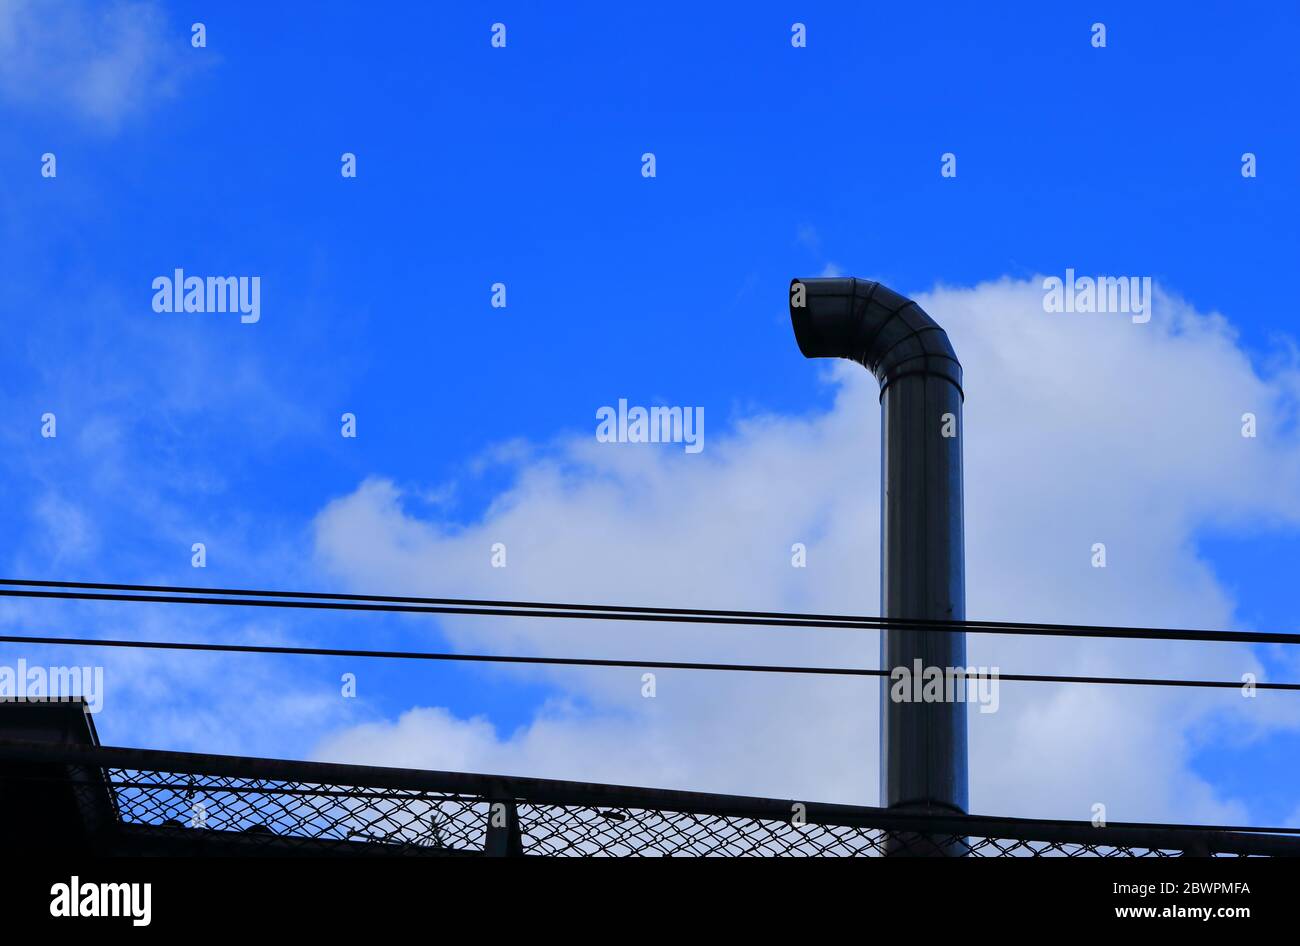 Closeup hohe Metall-Schornstein durch Schweißen verbunden, um eine Biegung nahe dem Ende der Öffnung zu machen, unter Sonnenlicht und Schatten, blauer Himmel mit weißen Wolke Stockfoto